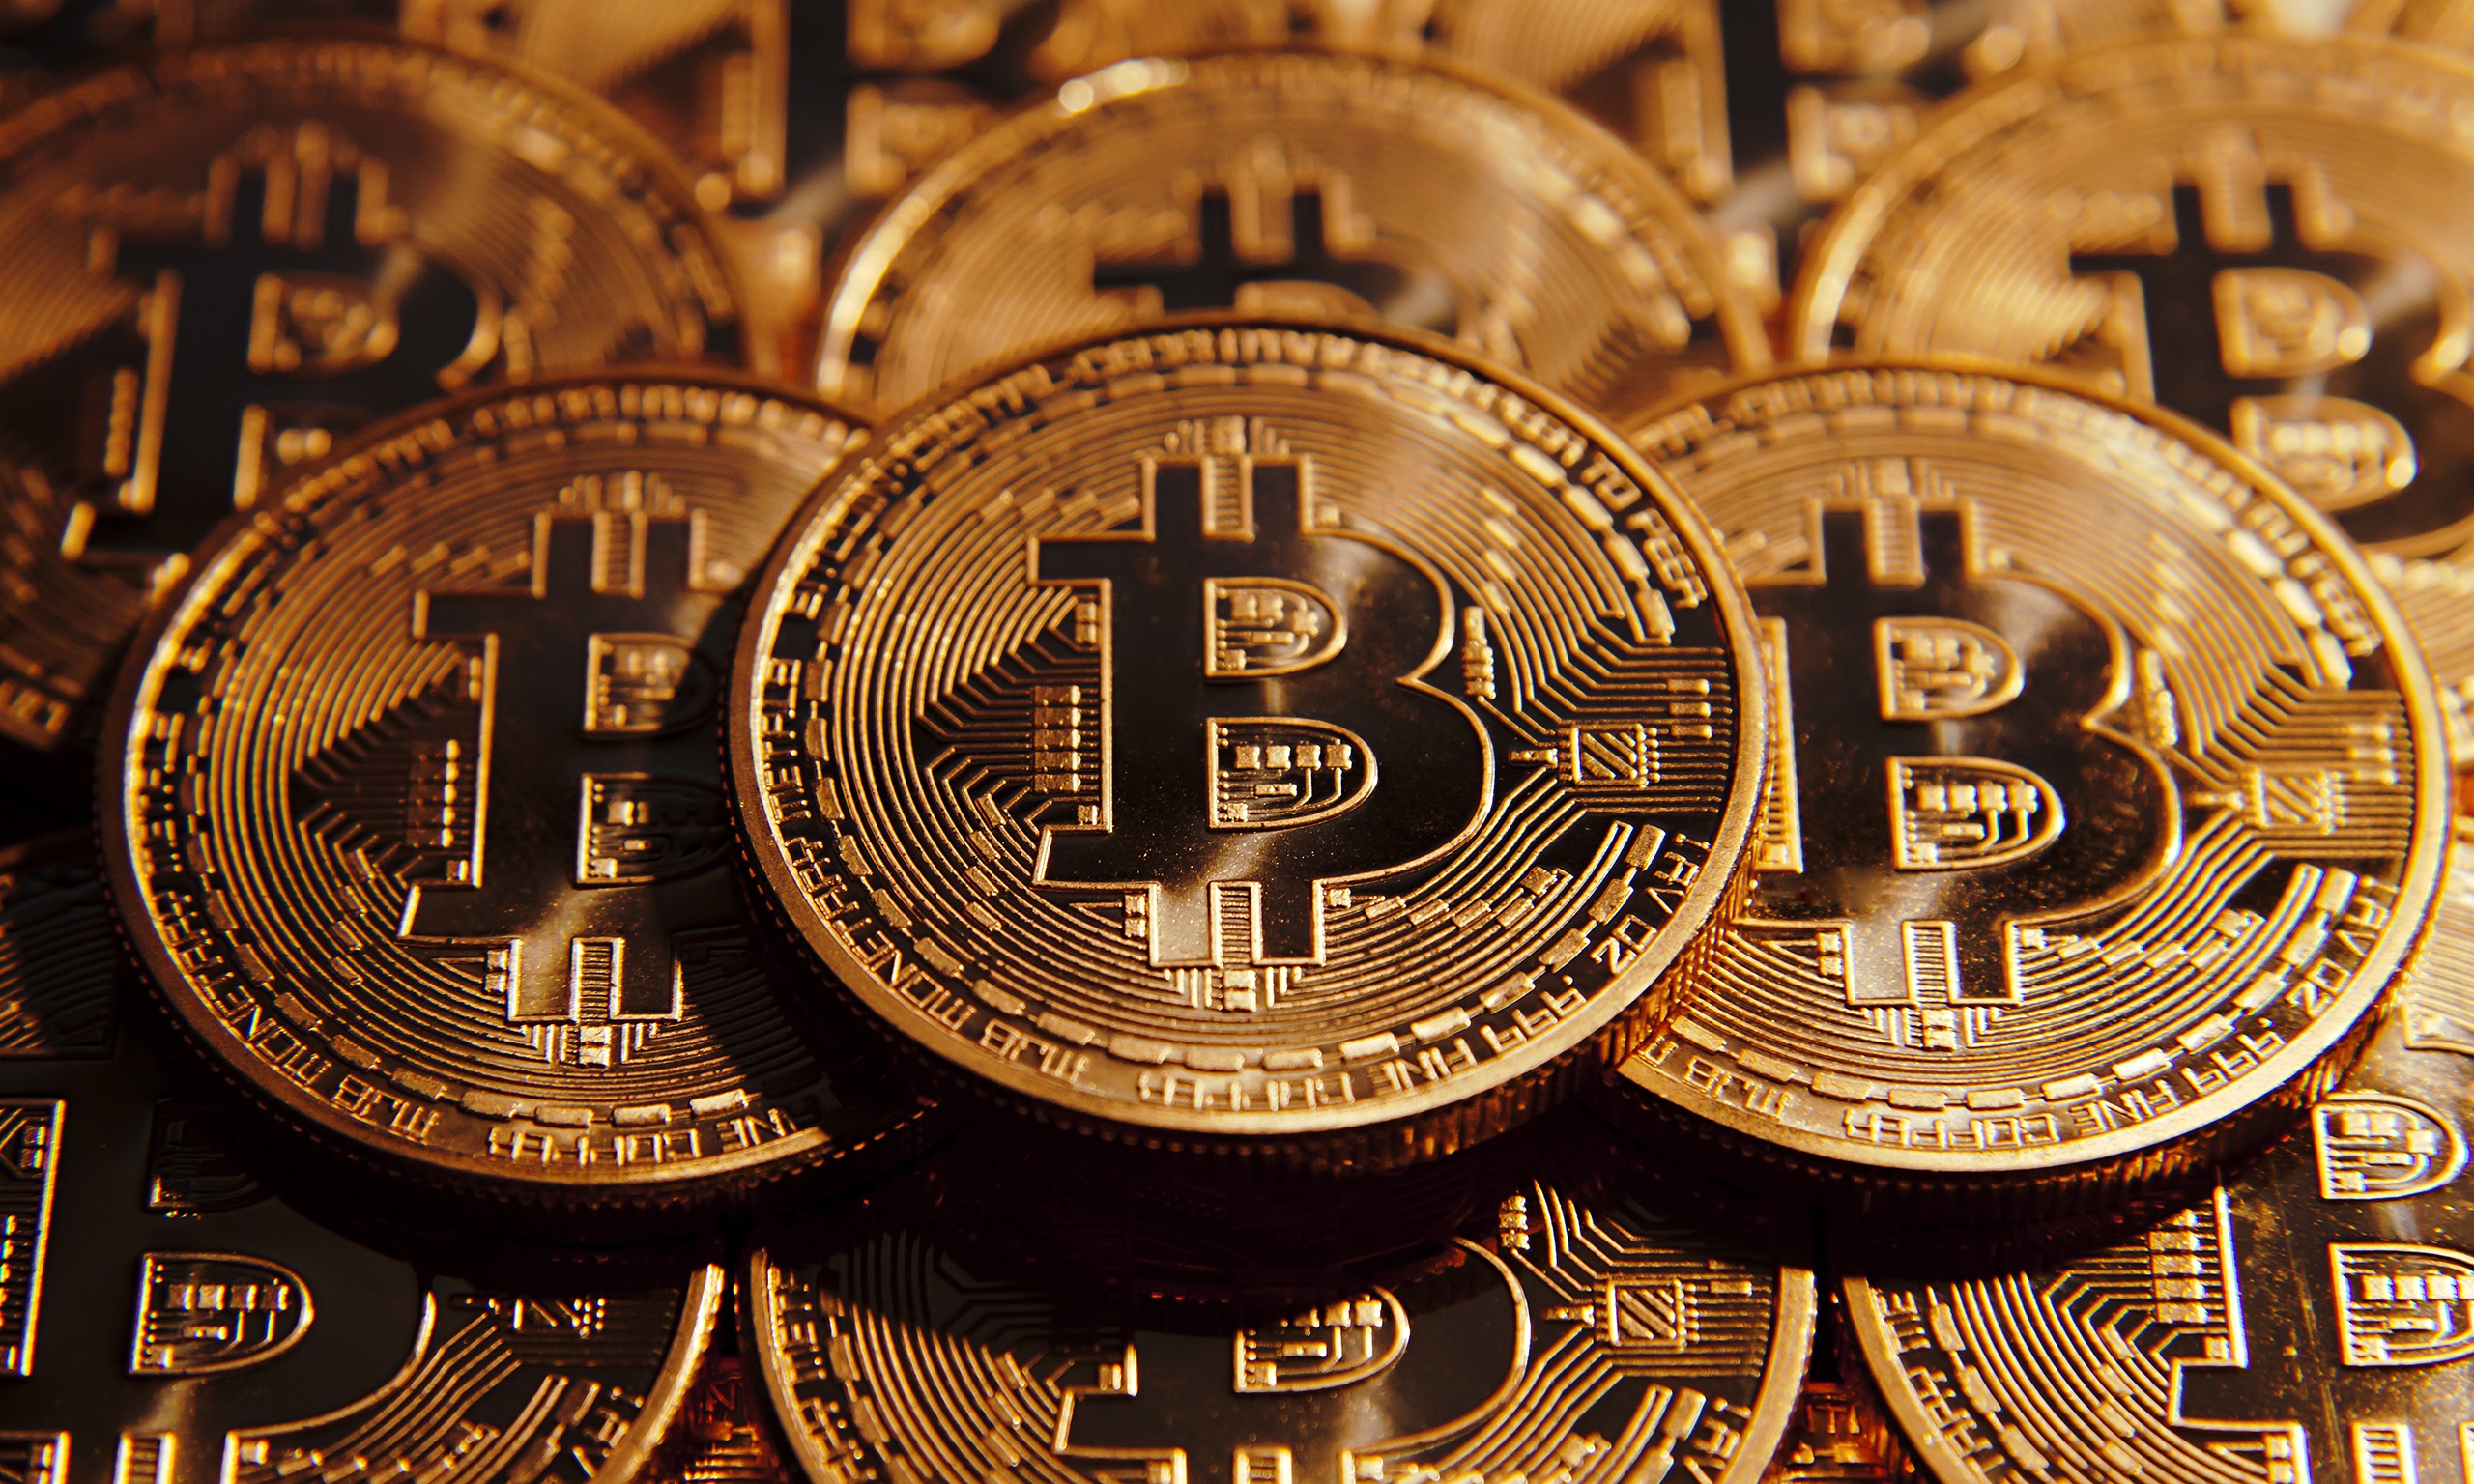 Is Bitcoin geld in de zin van de wet?